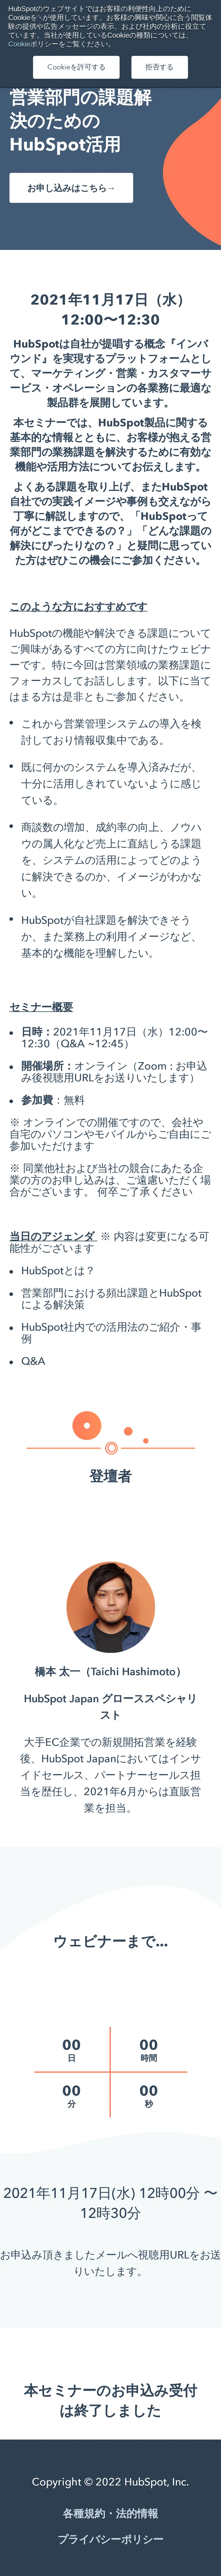 キャプチャ画面 会社名:HubSpot Japan株式会社プロジェクト名:Hubspot 画面名:説明会・セミナー詳細 デバイス名:SPカテゴリ:WEB・インターネットタグ:説明会・セミナー詳細,SP